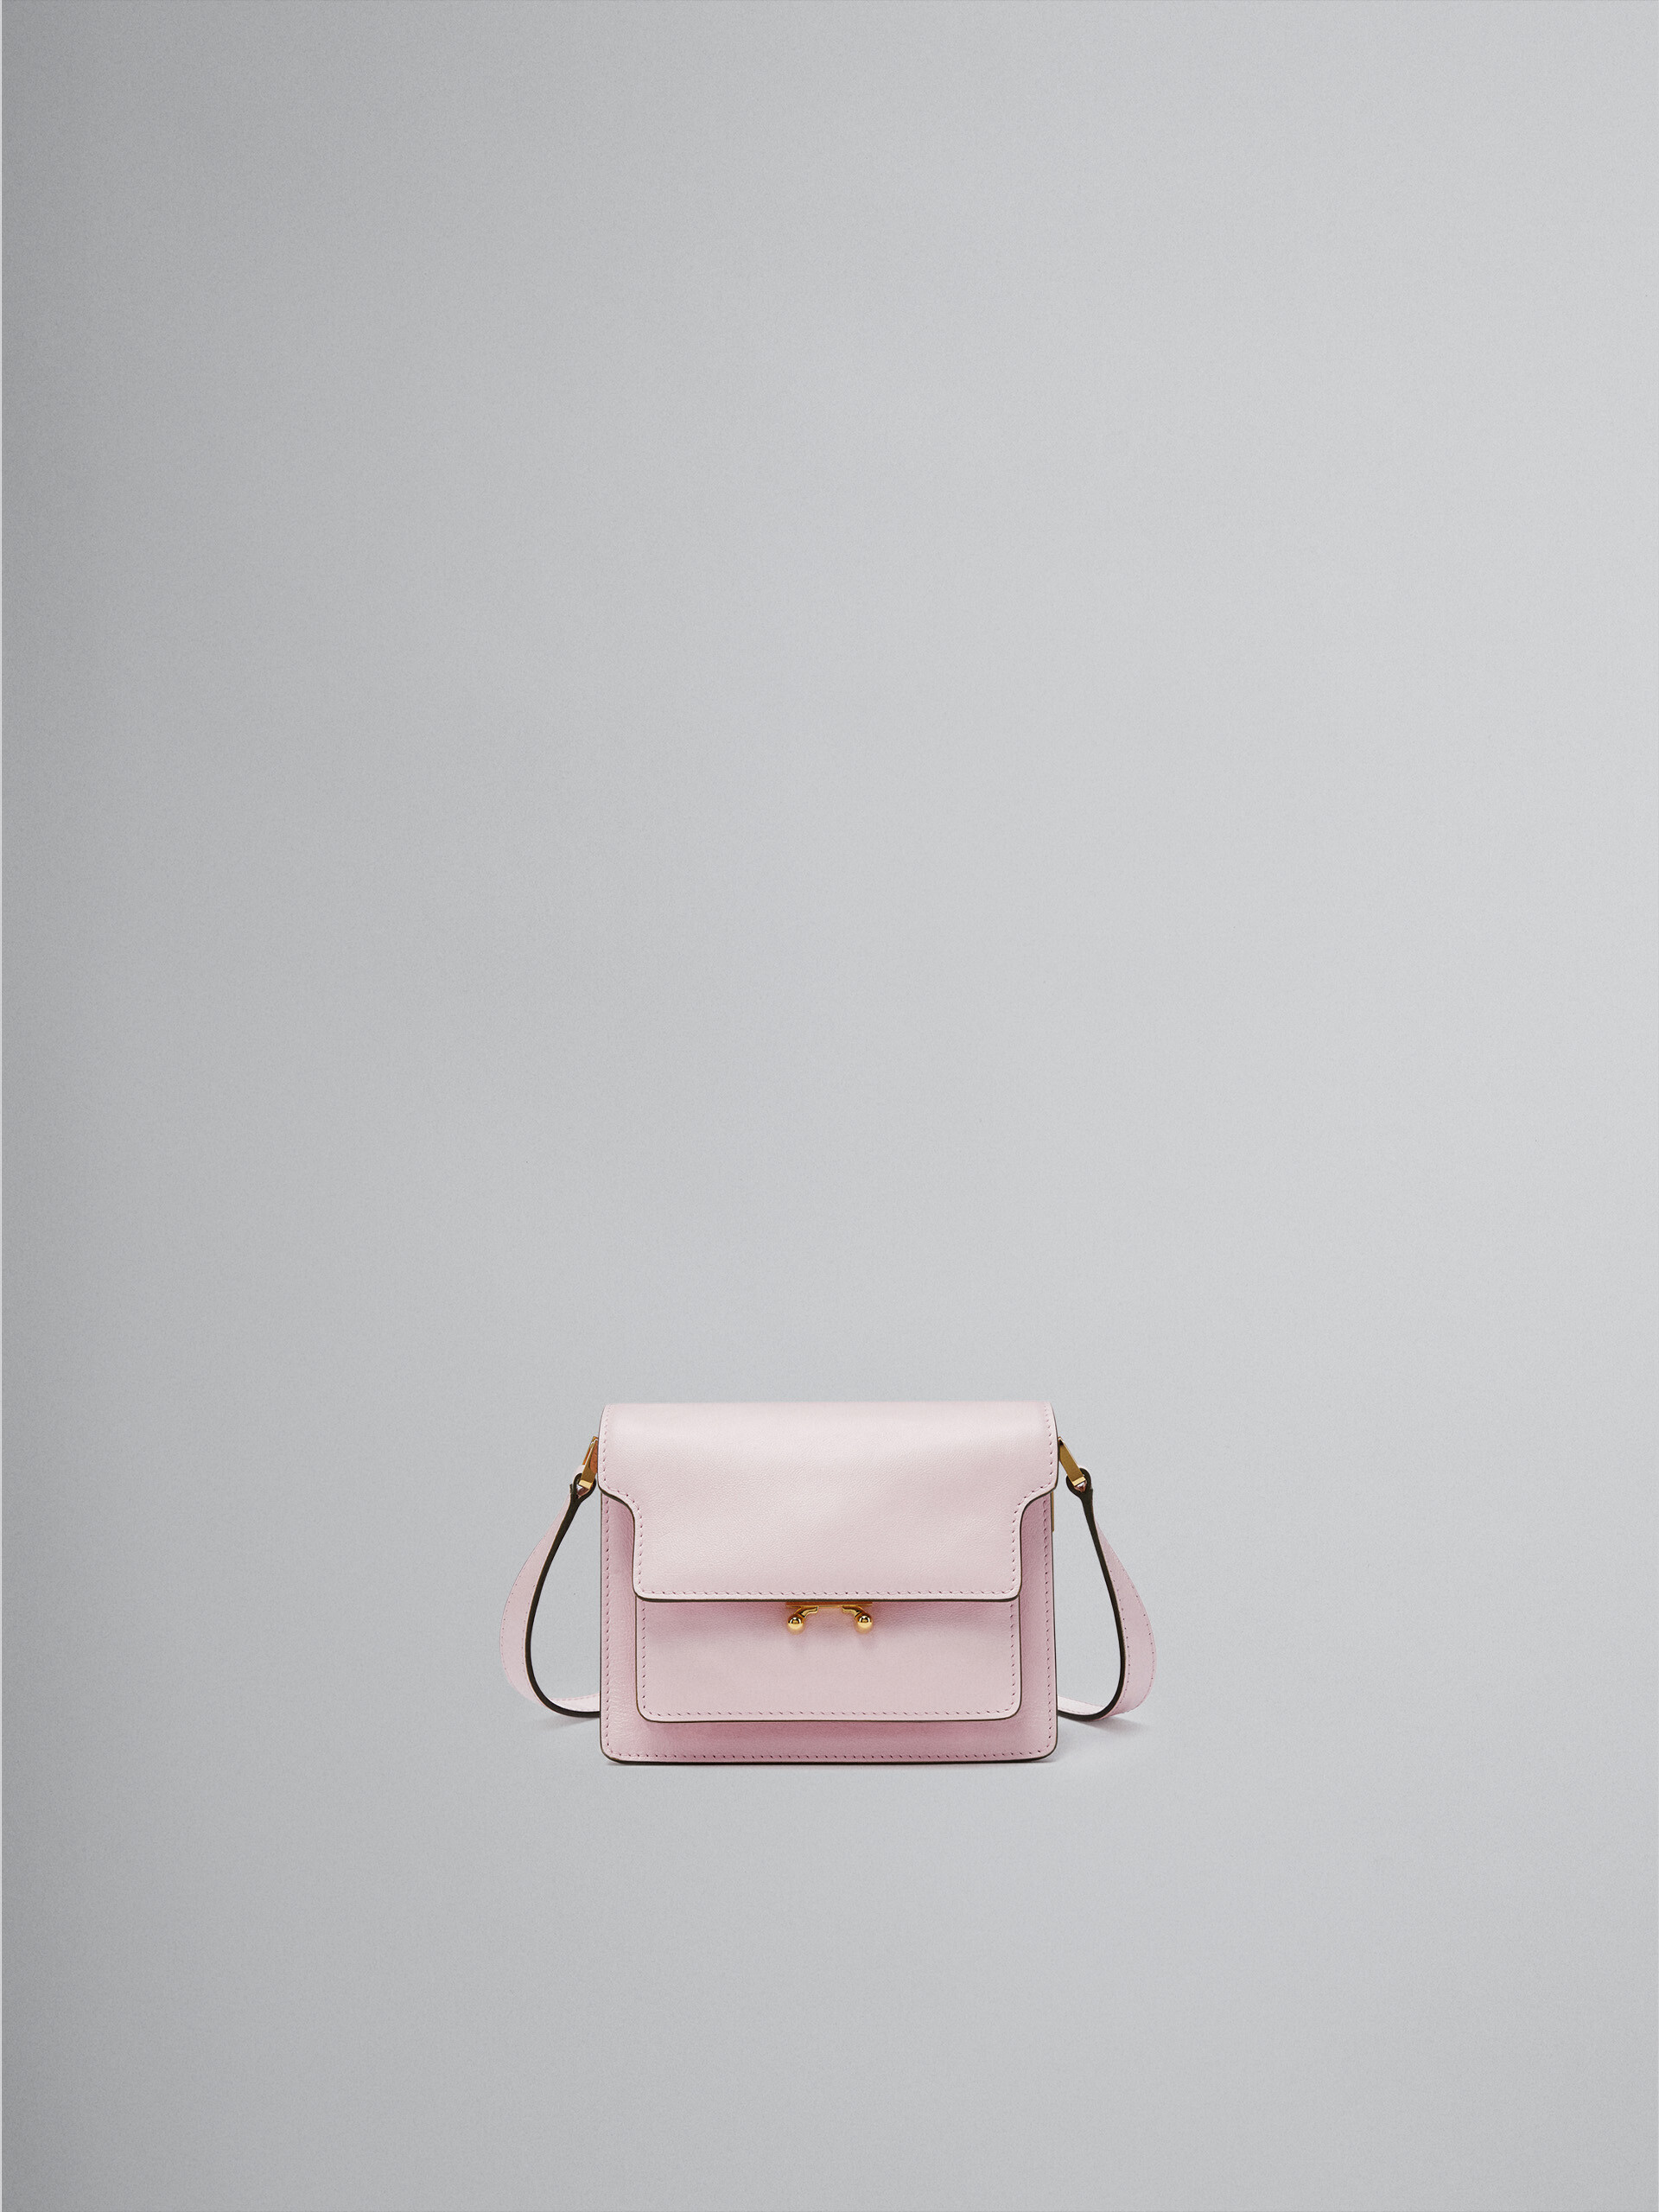 TRUNK SOFT bag mini in pelle rosa - Borse a spalla - Image 1